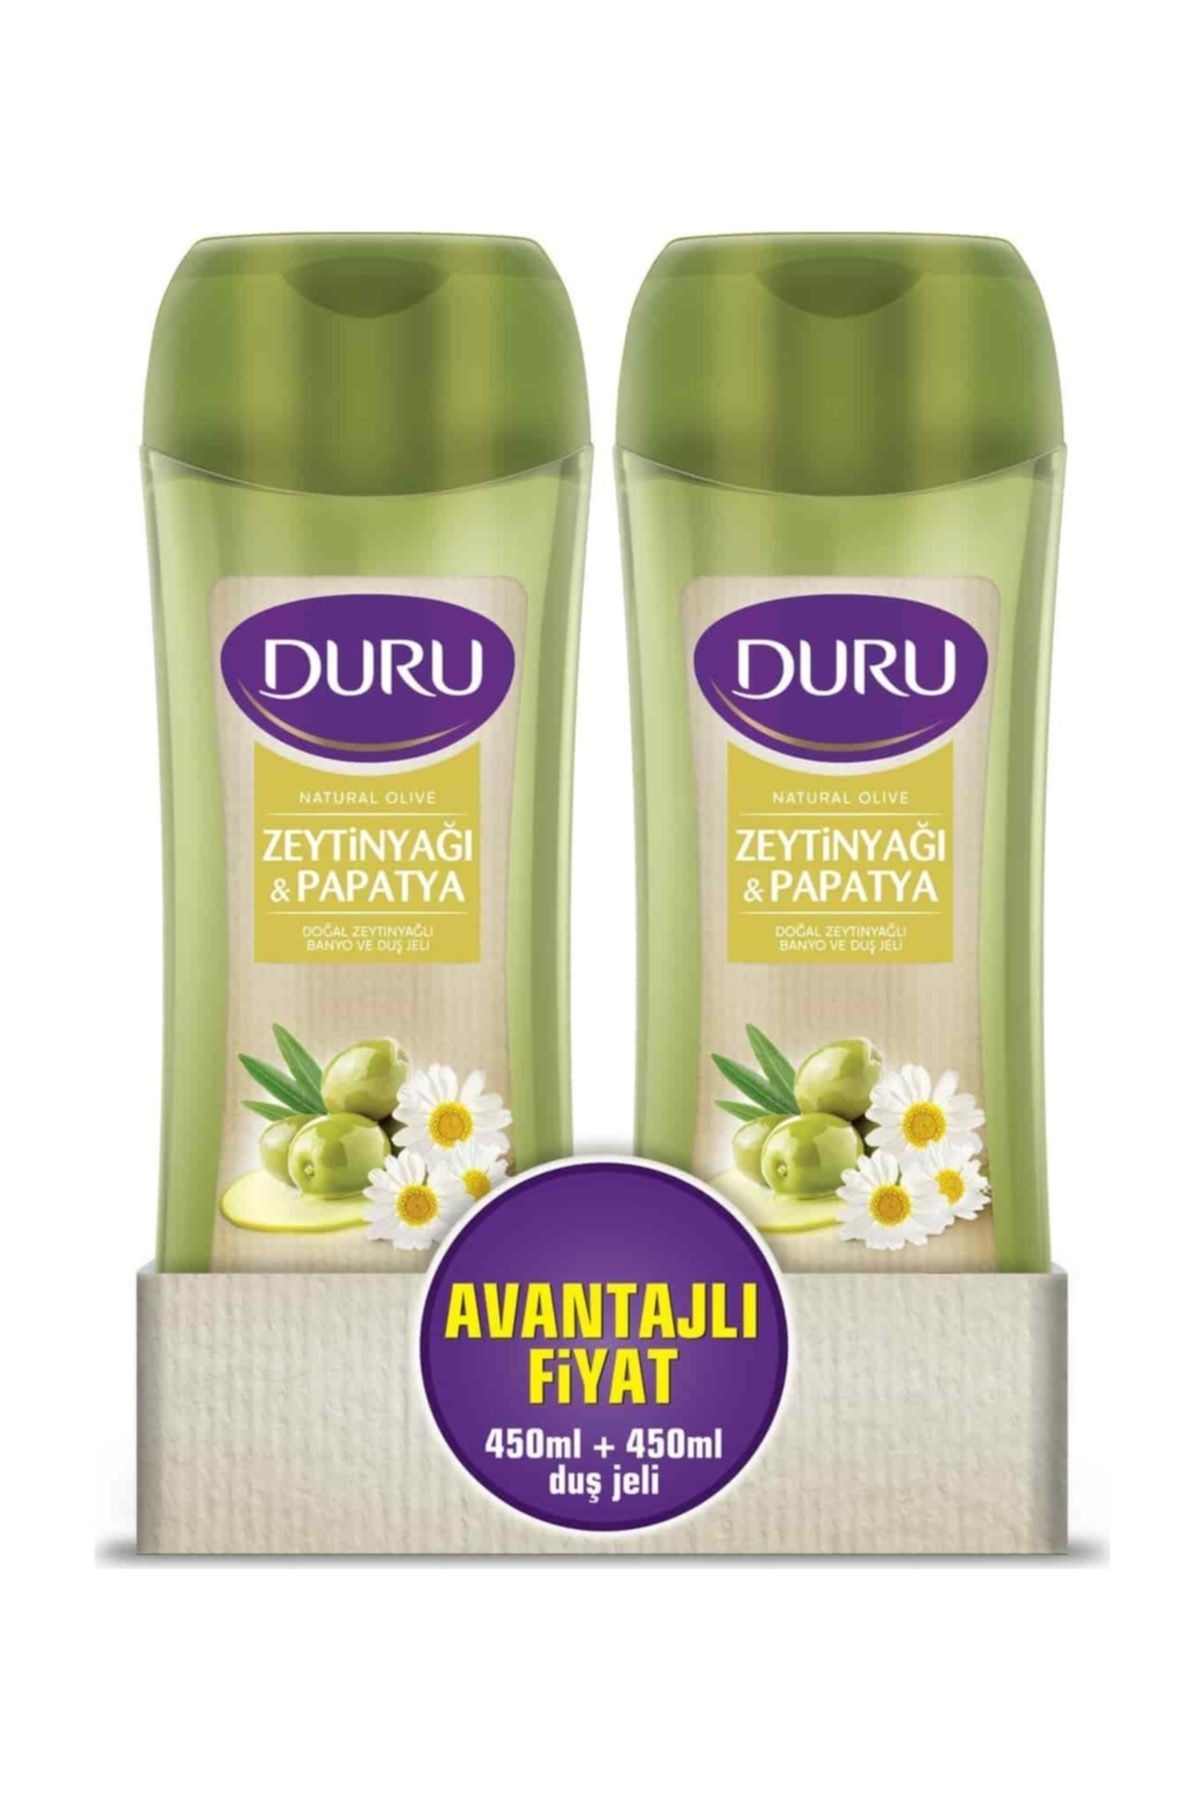 Duru Natural Olive Papatya Duş Jeli 450 ml & 450 ml